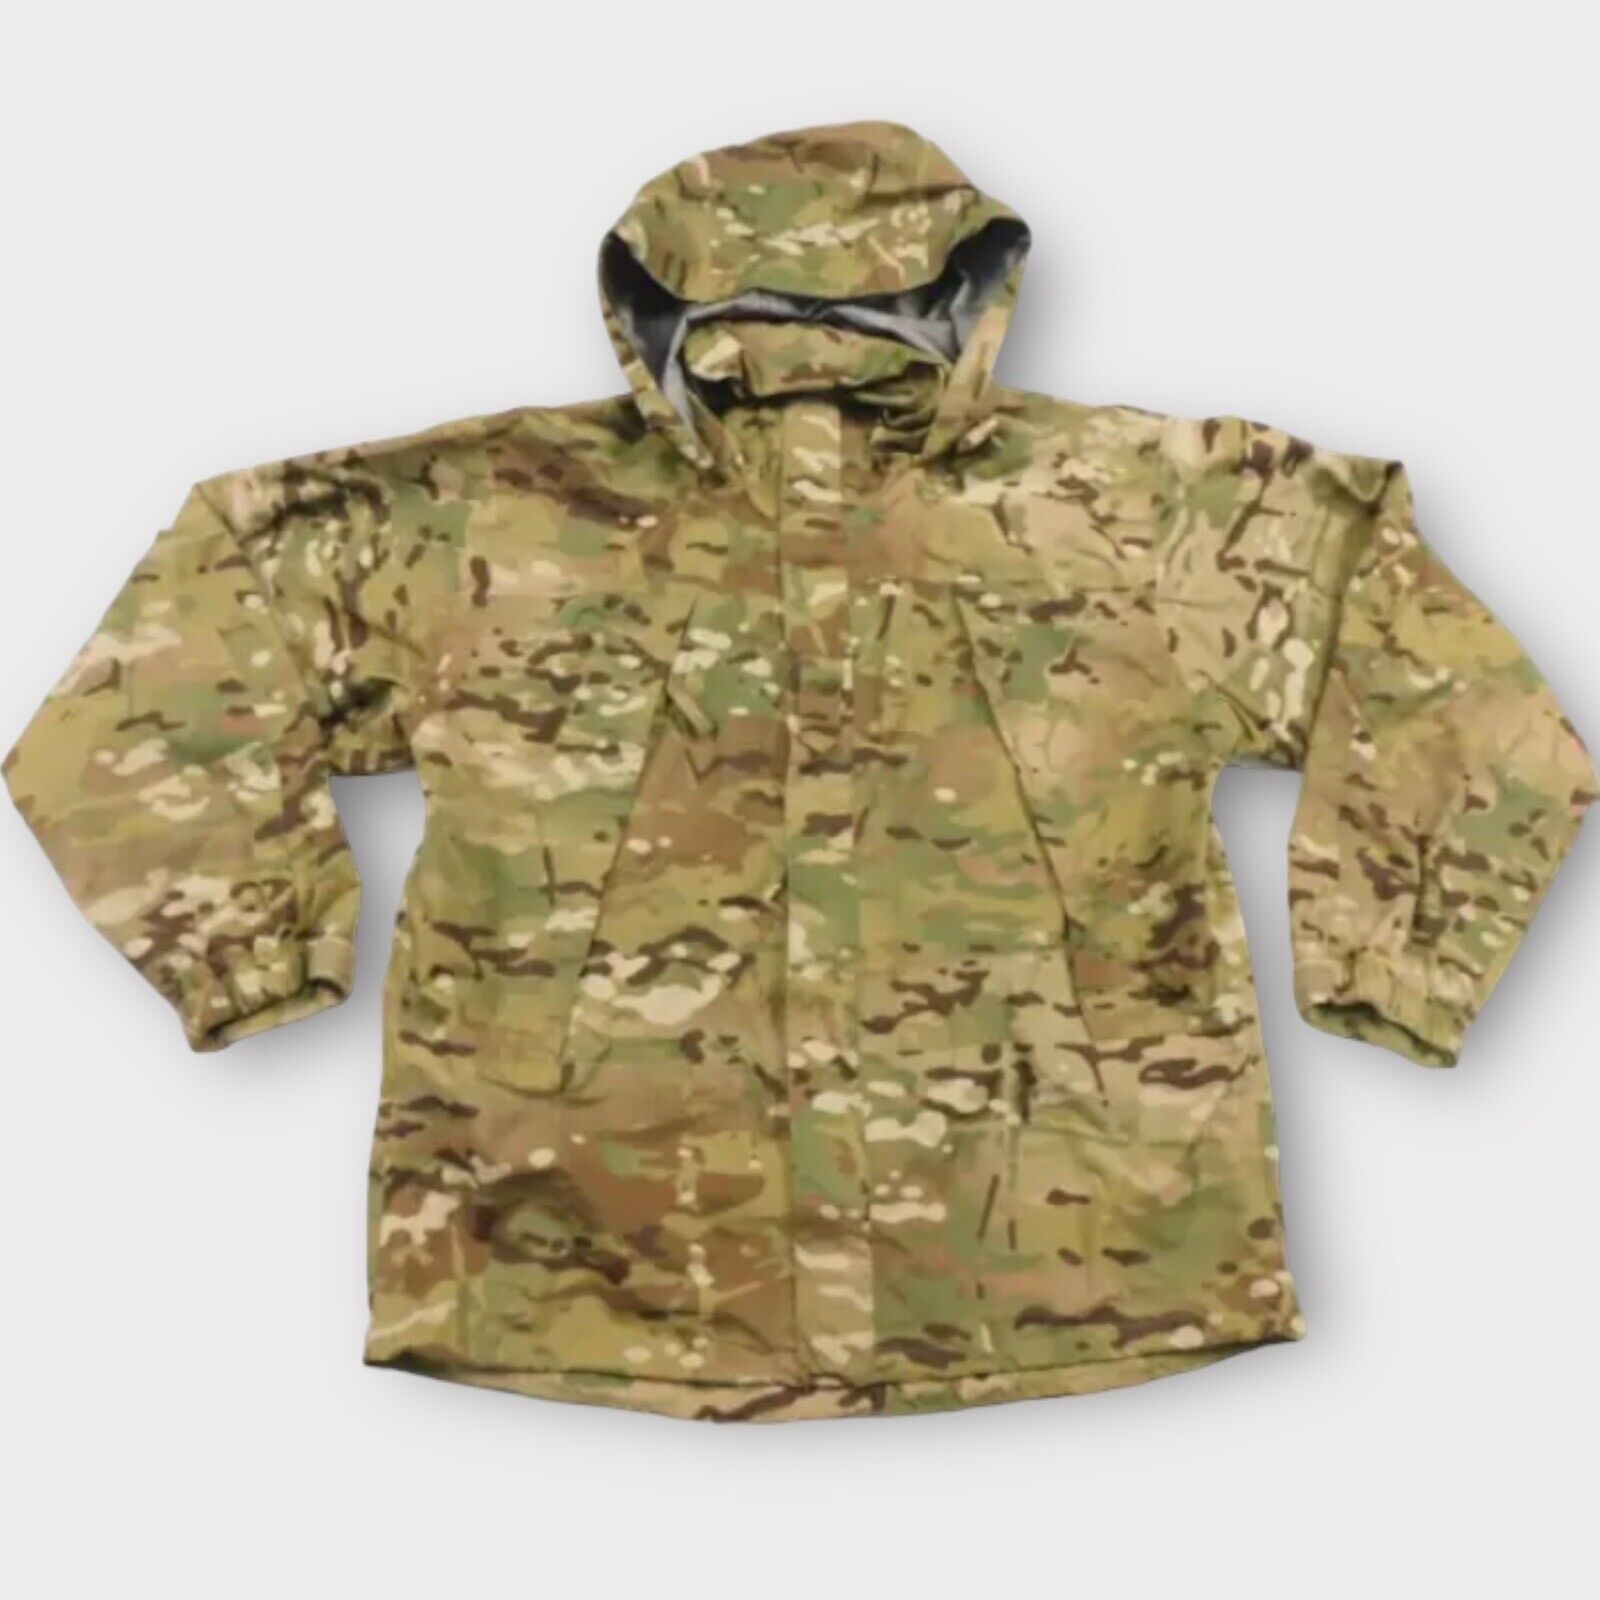 Extreme Cold Wet Weather Jacket Medium-Reg Gen III Layer 6 Camo OCP Coat NWOT